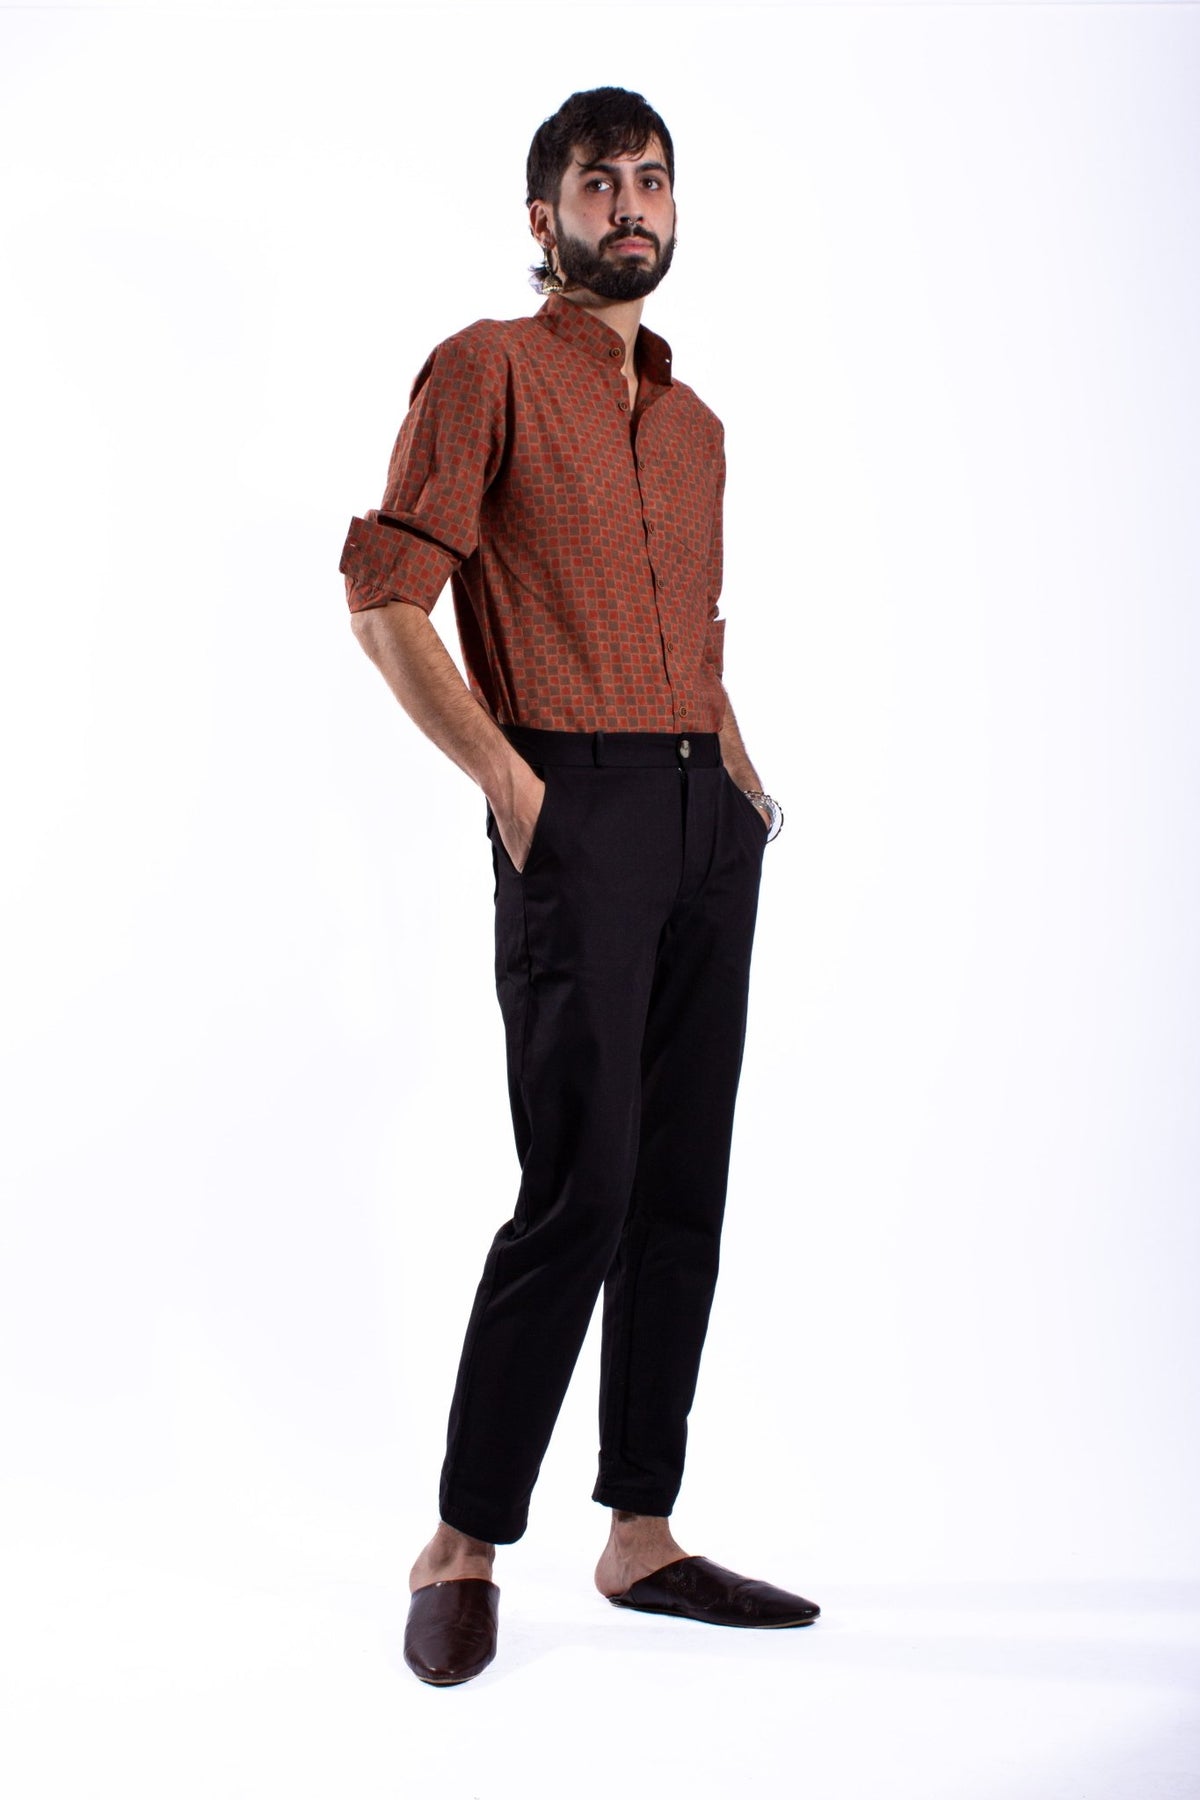 Pantalon HOSUR - Coton bio - Couleur Unie - Azaadi, la mode responsable accessible